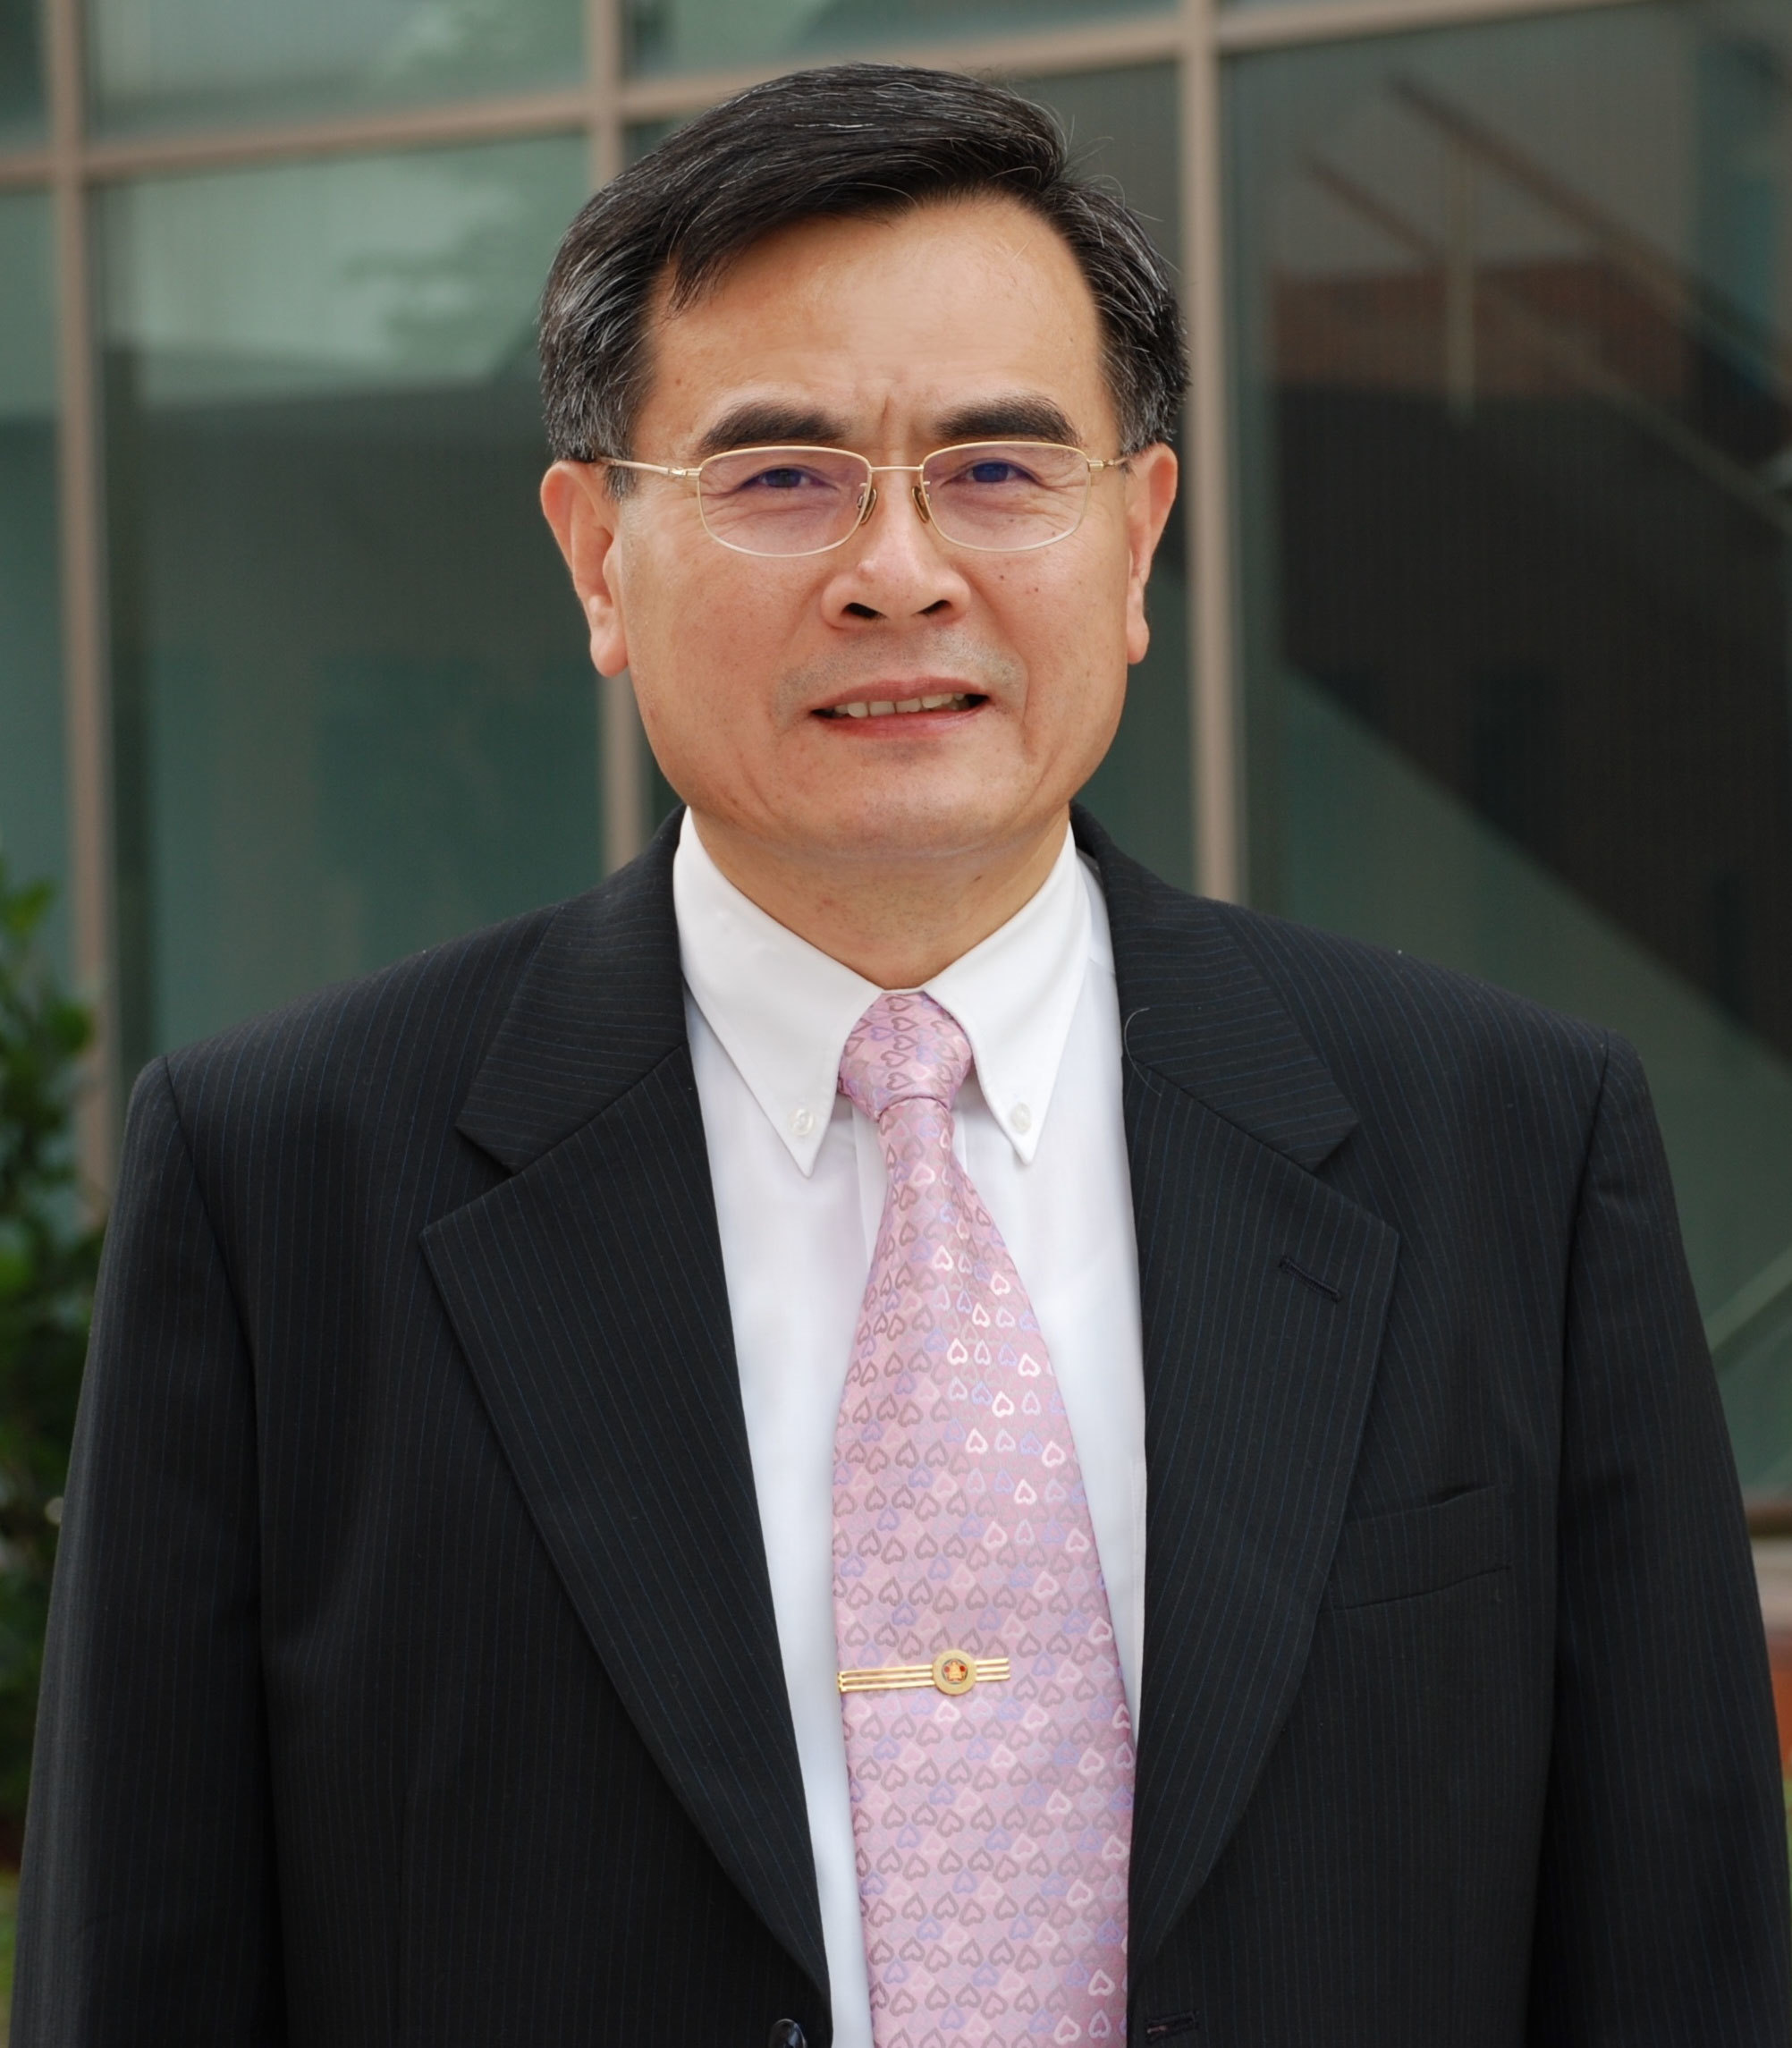 Professor Woei-Shyan Lee